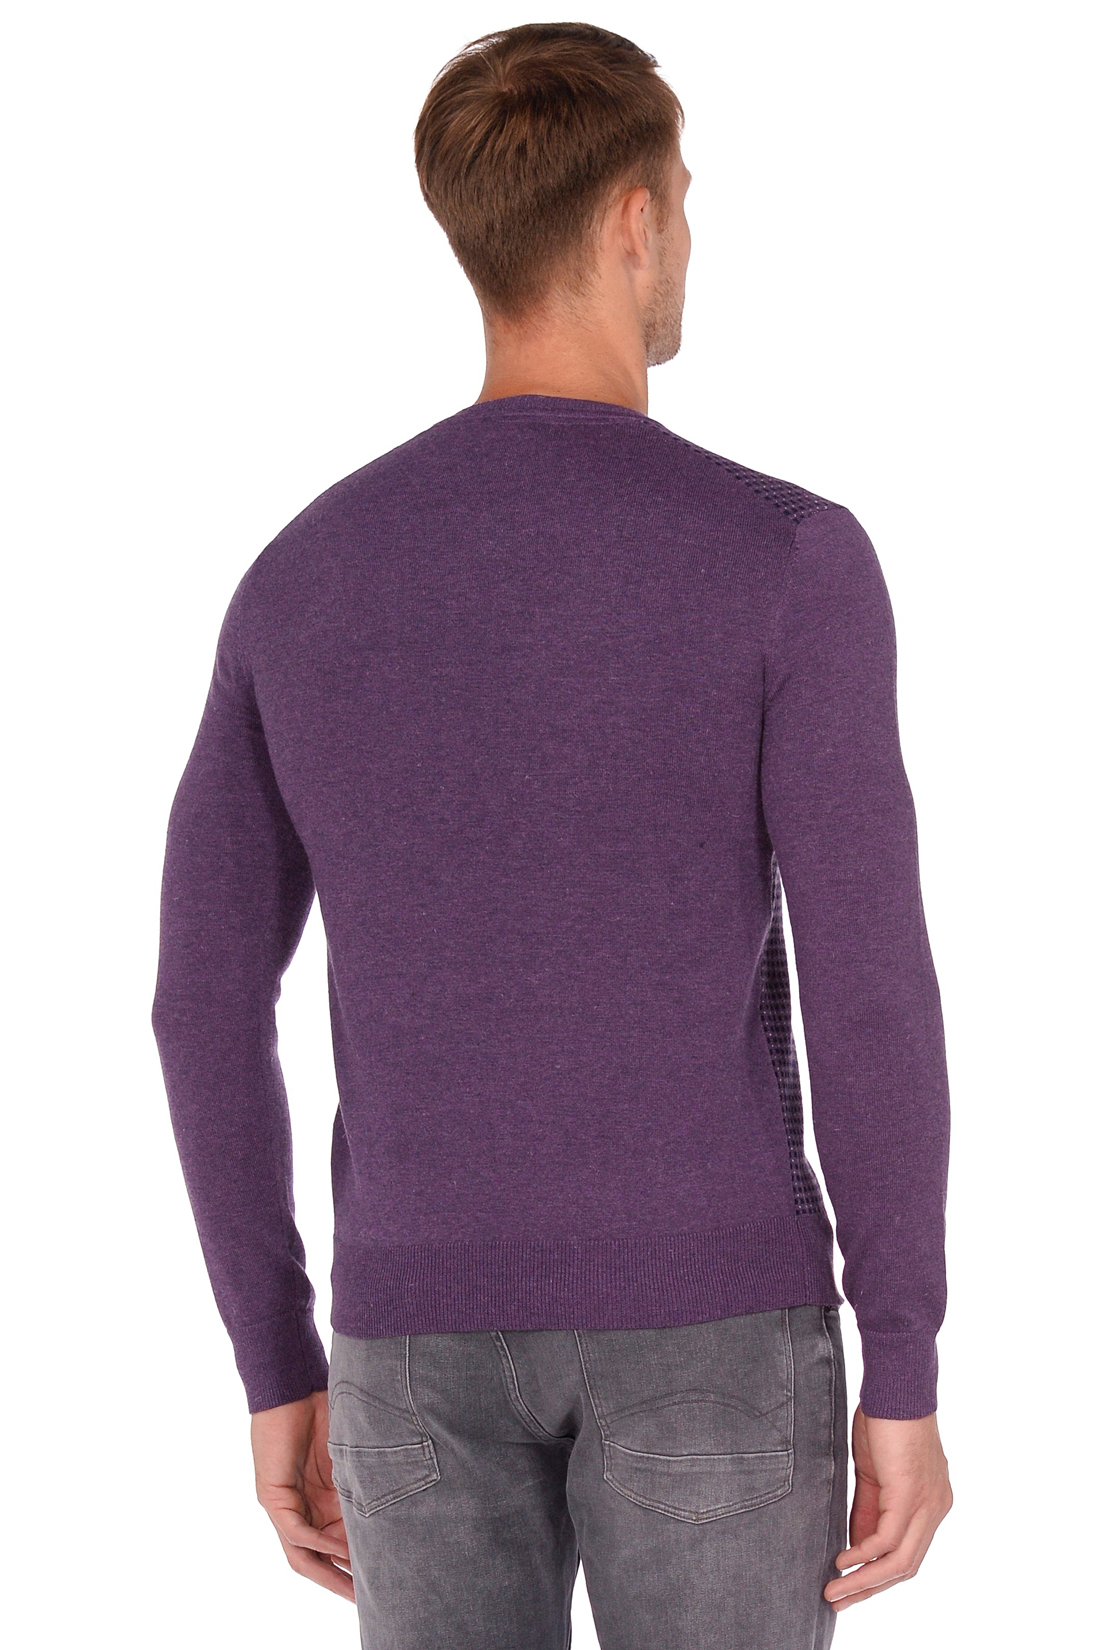 Пуловер с мелким узором в клетку (арт. baon B638503), размер XL, цвет фиолетовый Пуловер с мелким узором в клетку (арт. baon B638503) - фото 2